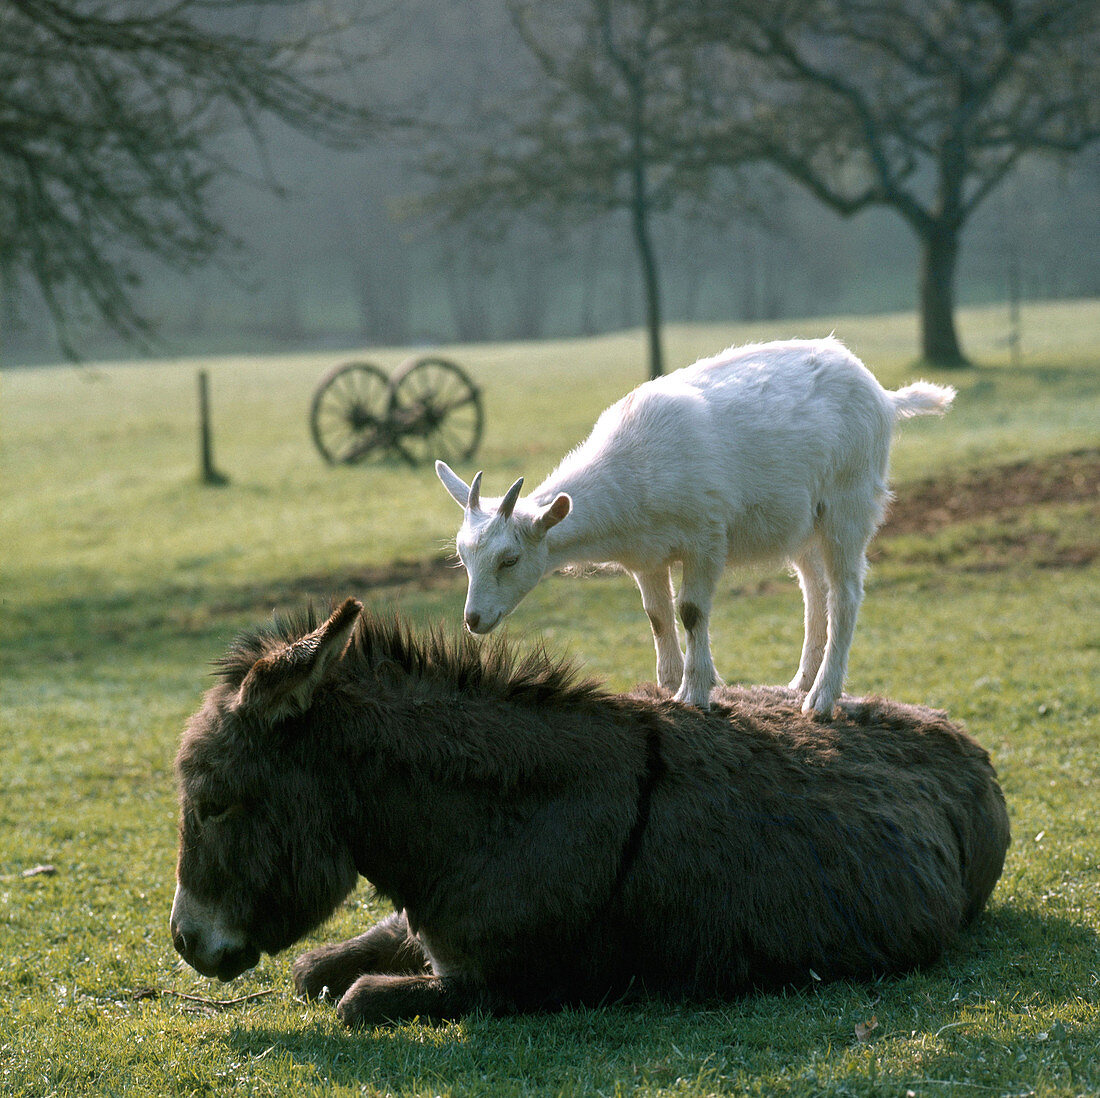 Goat and Donkey